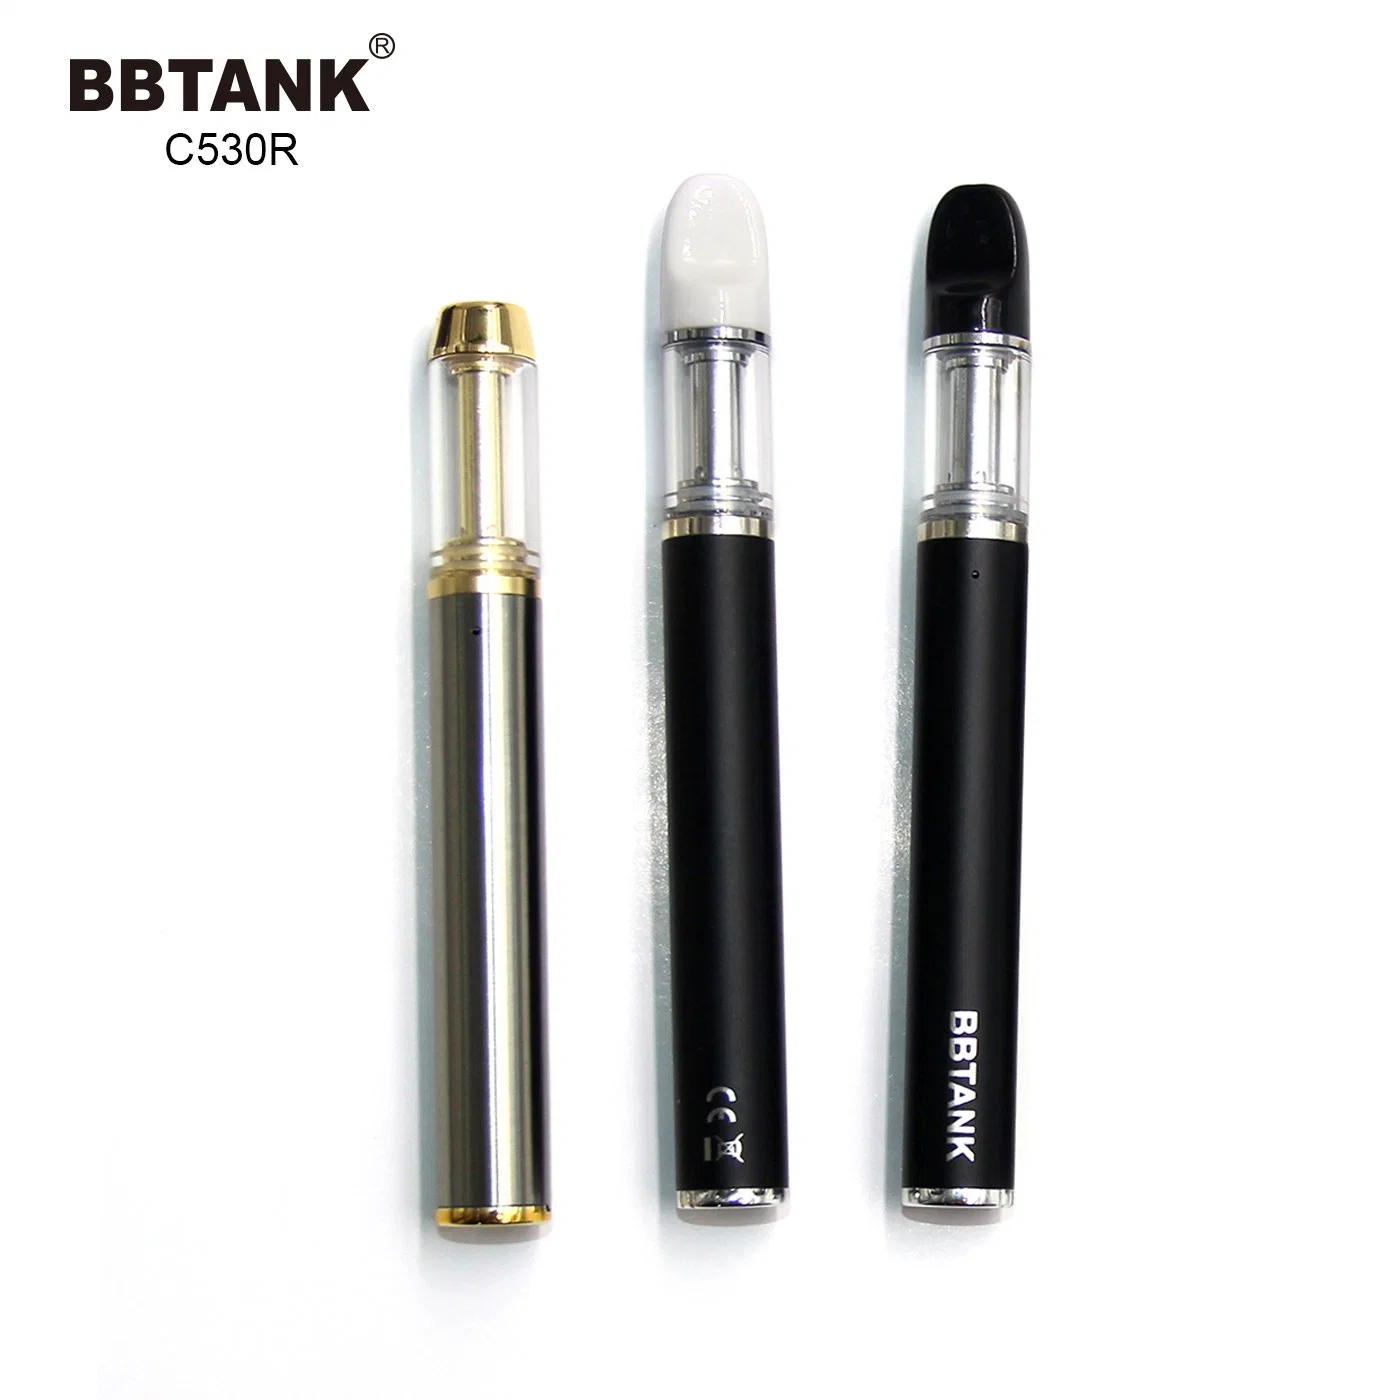 Wholesale Disposable Vaporizer Pen Cartridge 0.5ml 1ml Oil Ceramic Vape Pen with Custom Box 1 Ml Vape Pen 530mAh Vape Pen